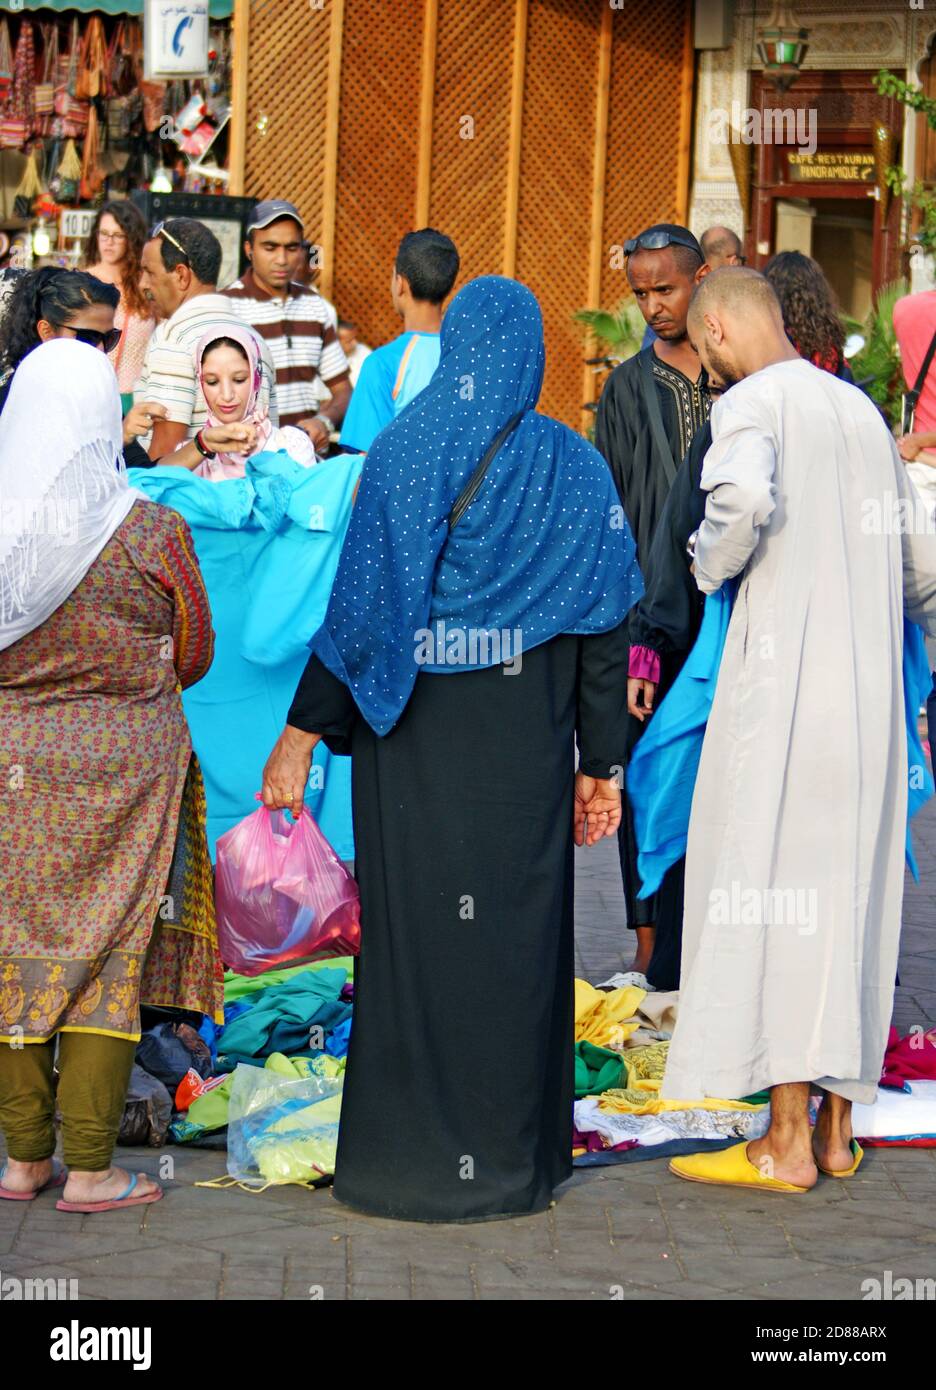 Händler und Kunden handeln auf der Straße in der Altstadt von Fez, Marokko,  um Kleidung Stockfotografie - Alamy